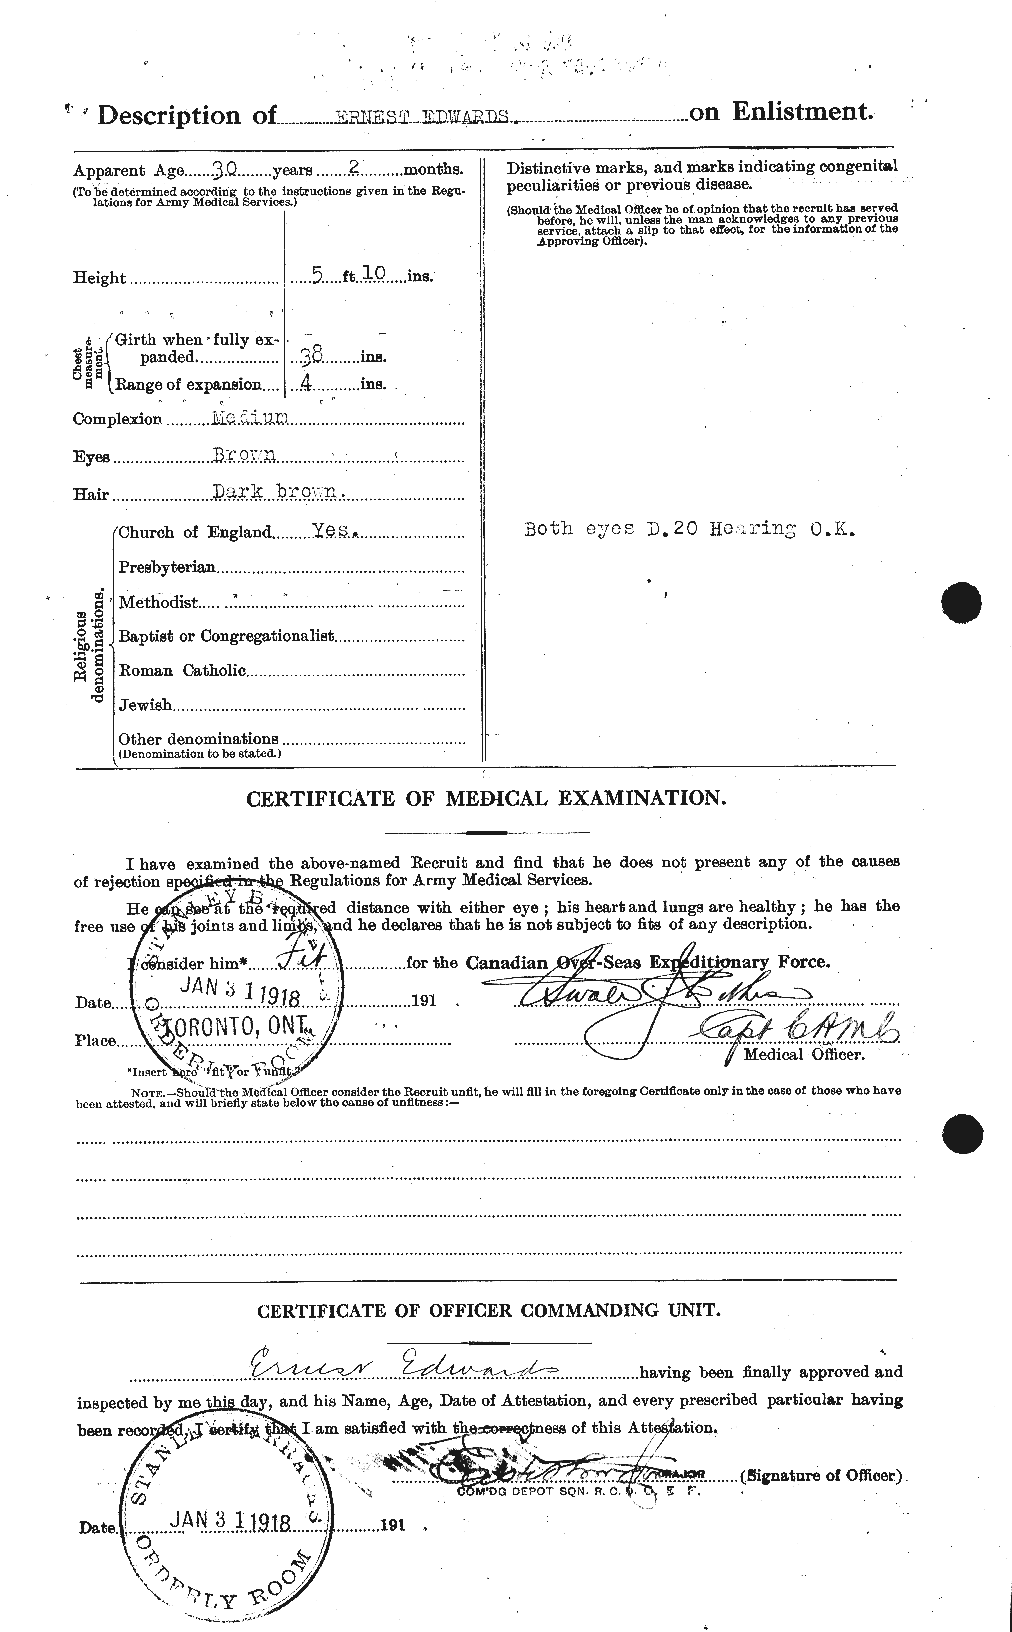 Dossiers du Personnel de la Première Guerre mondiale - CEC 309002b